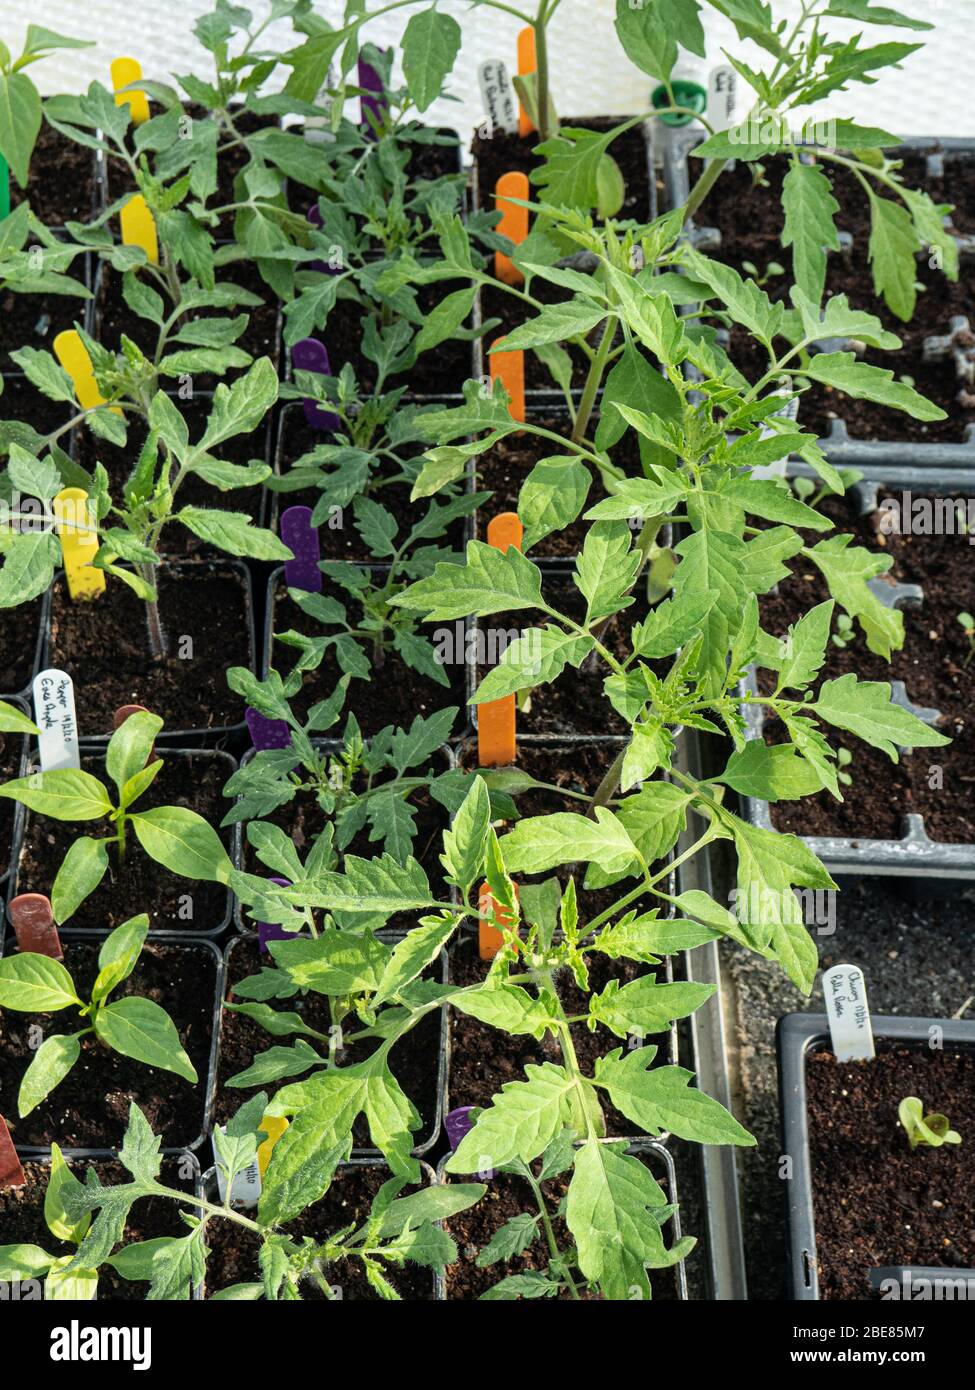 Eine Gruppe junger Tomaten- und Pfefferpflanzen, die in Töpfen in einem Gewächshaus wachsen Stockfoto